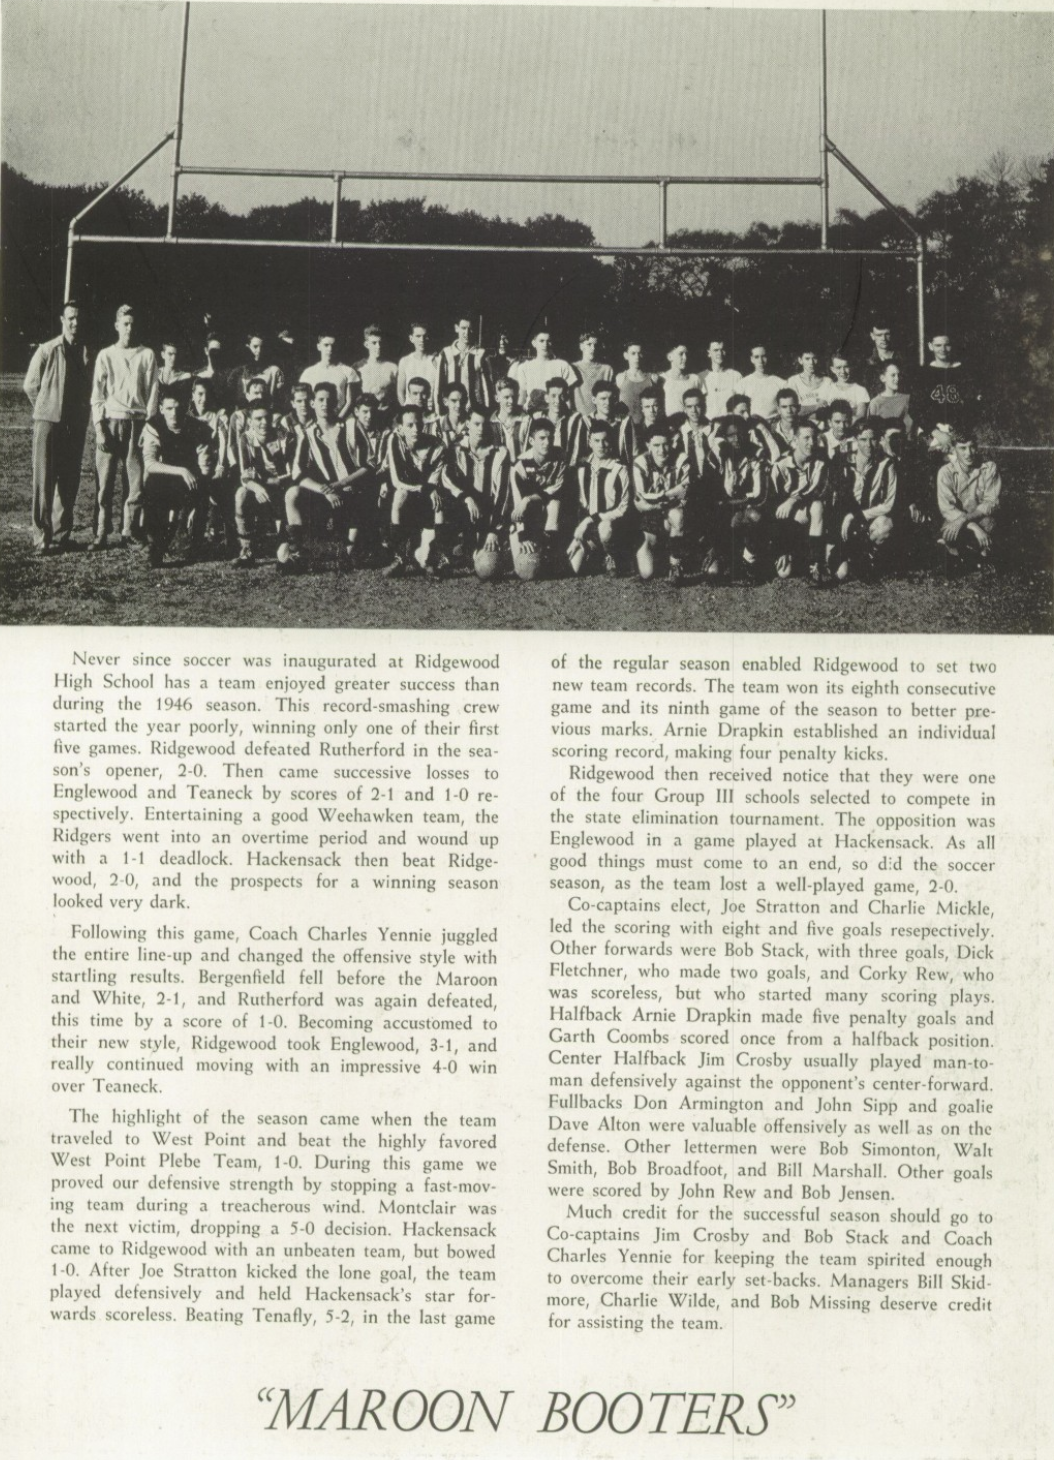 1946 Boys’ Soccer Team